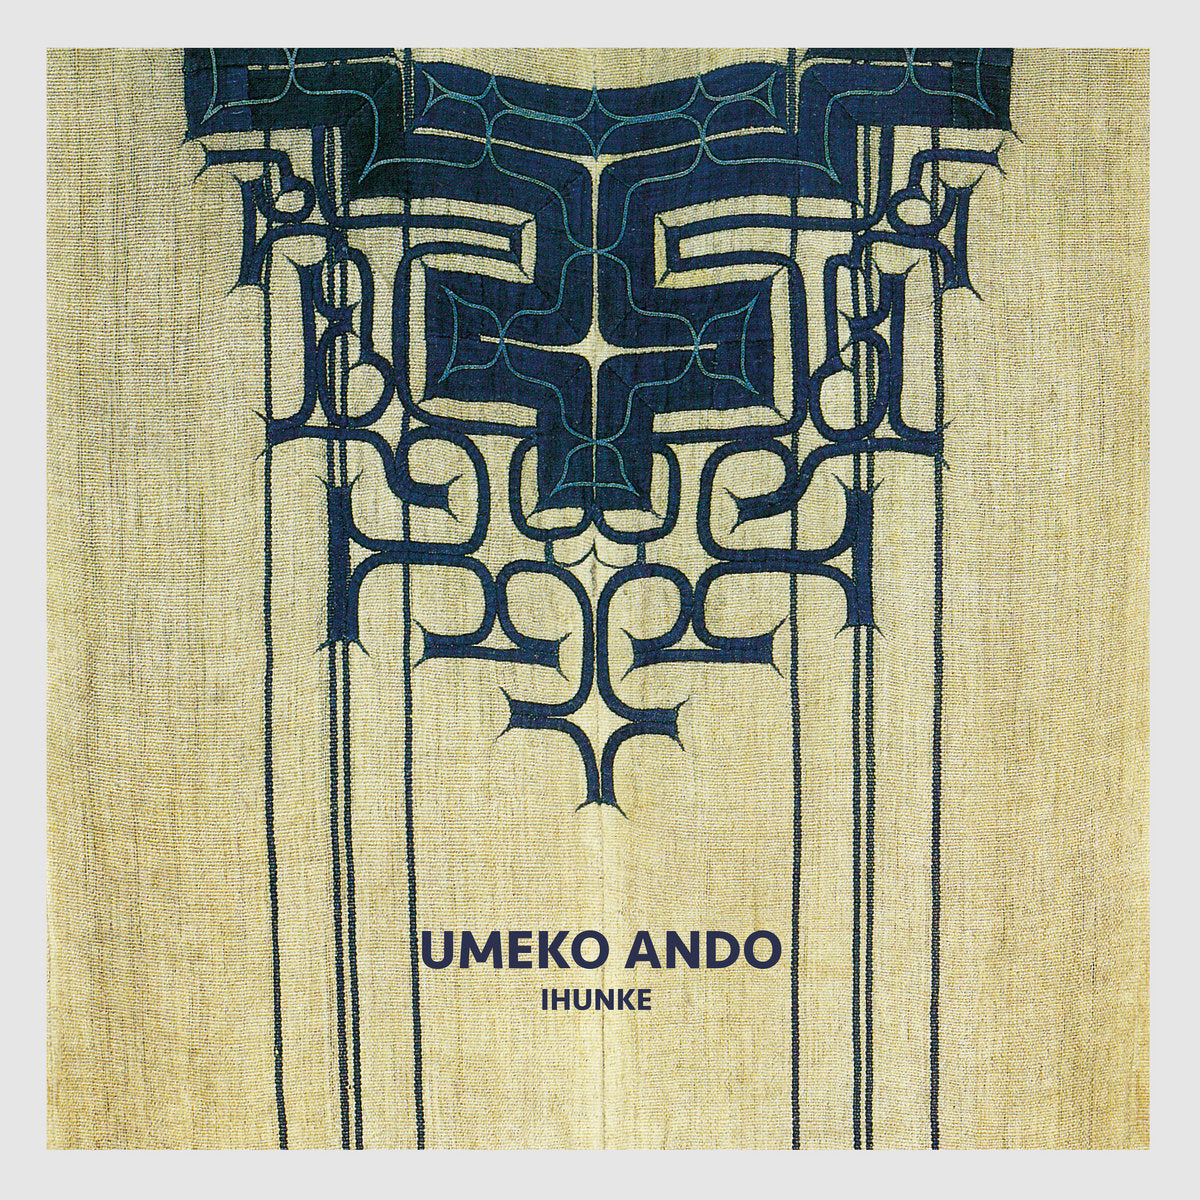 Umeko Ando – Ihunke